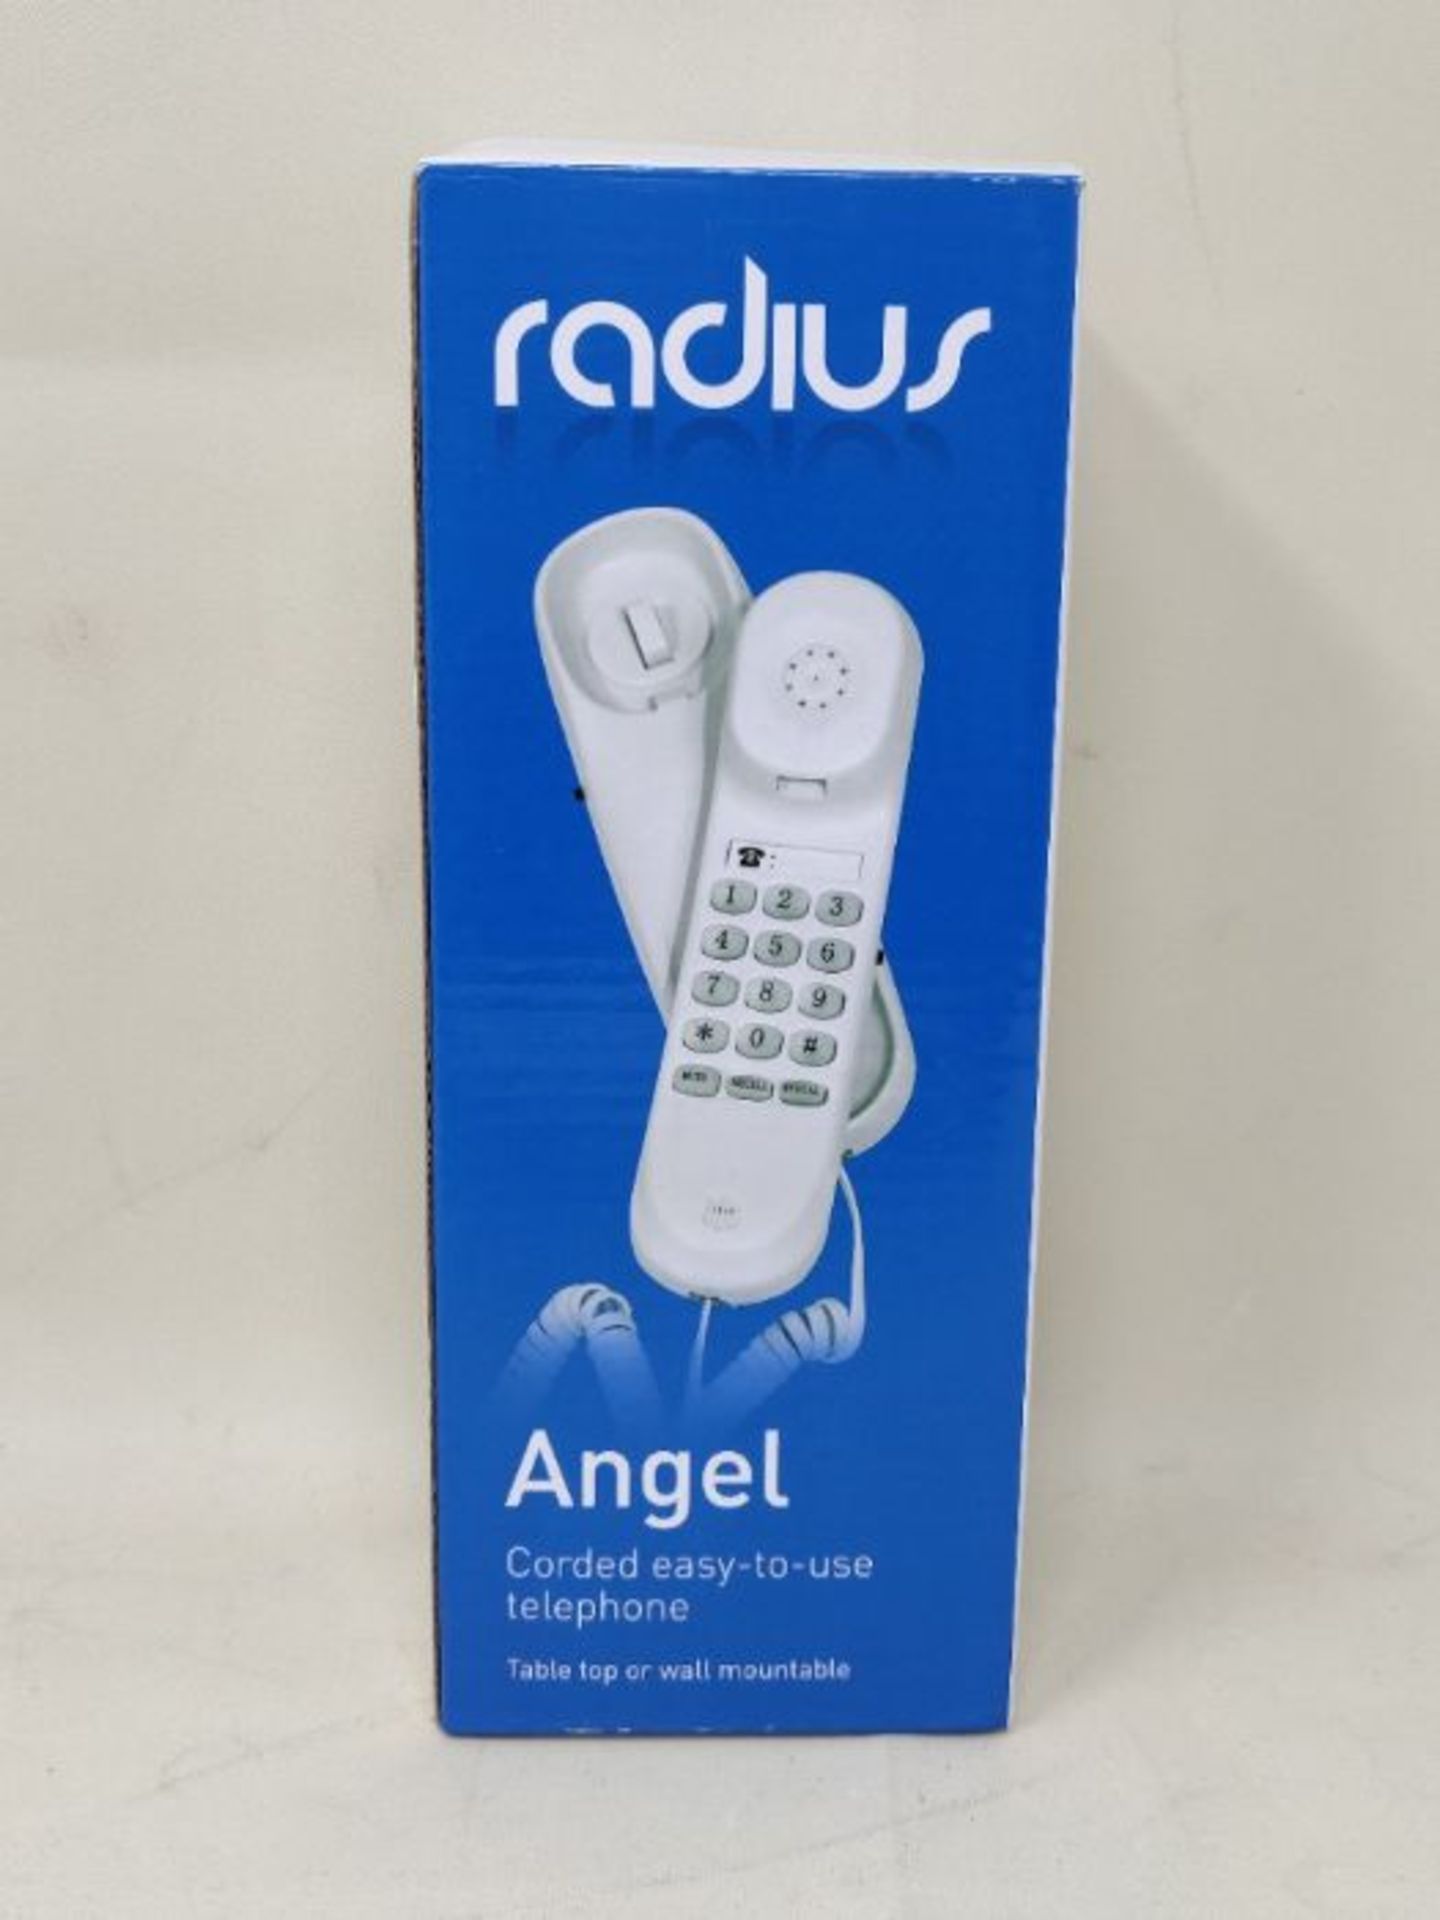 Radius Angel Corded Gondola Phone - White - Image 2 of 3